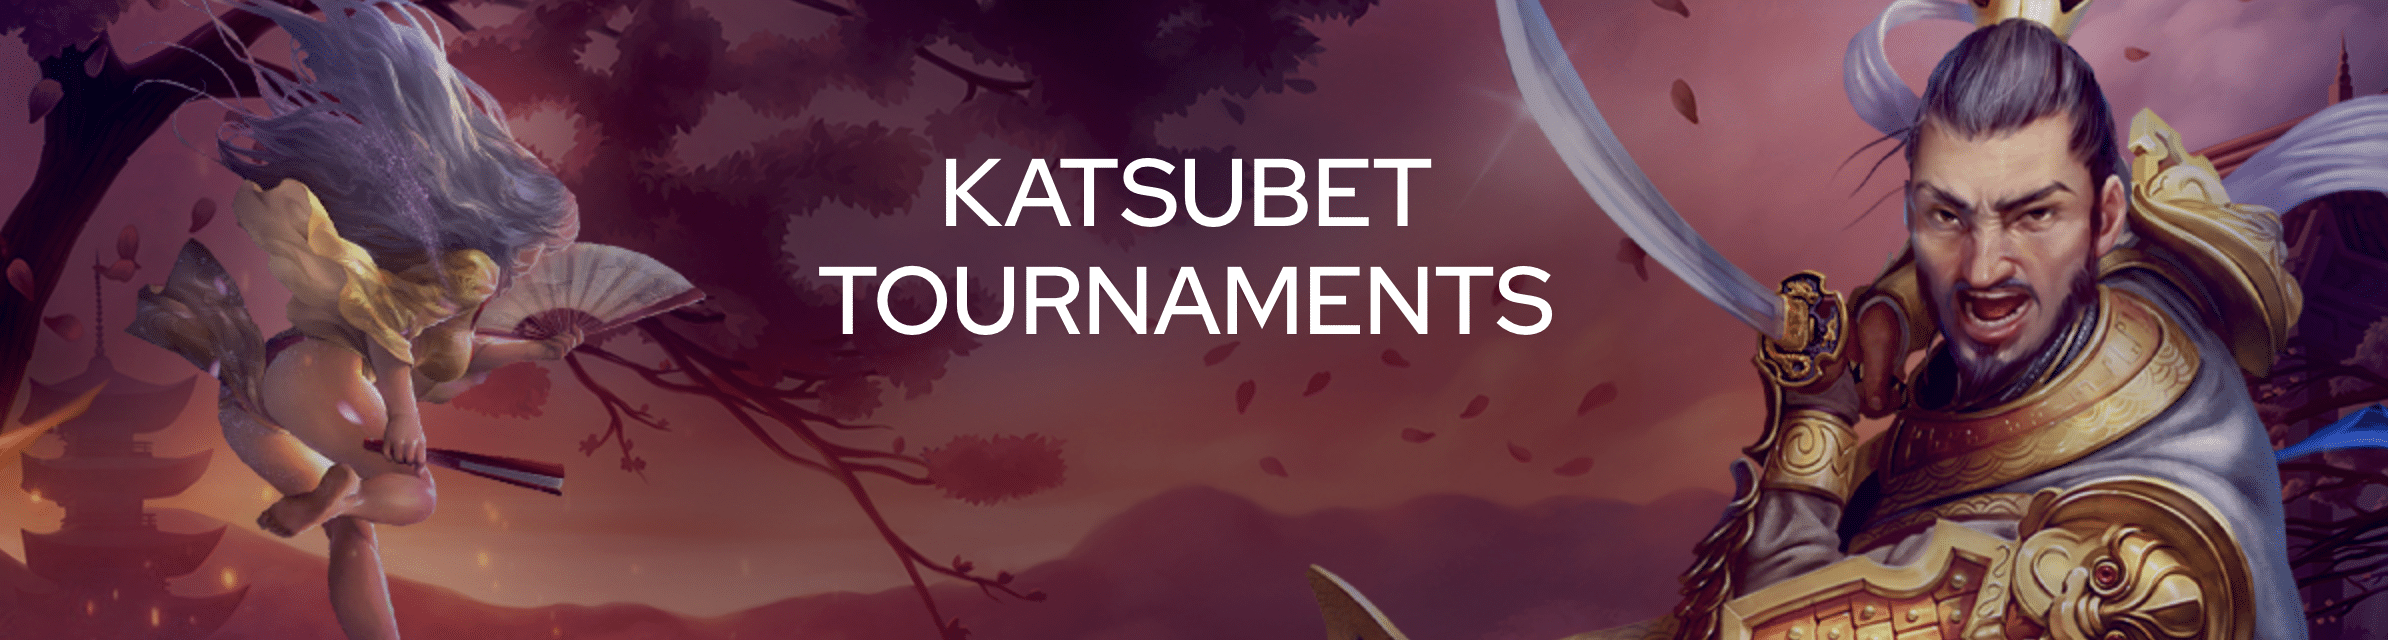 katsubet tournaments